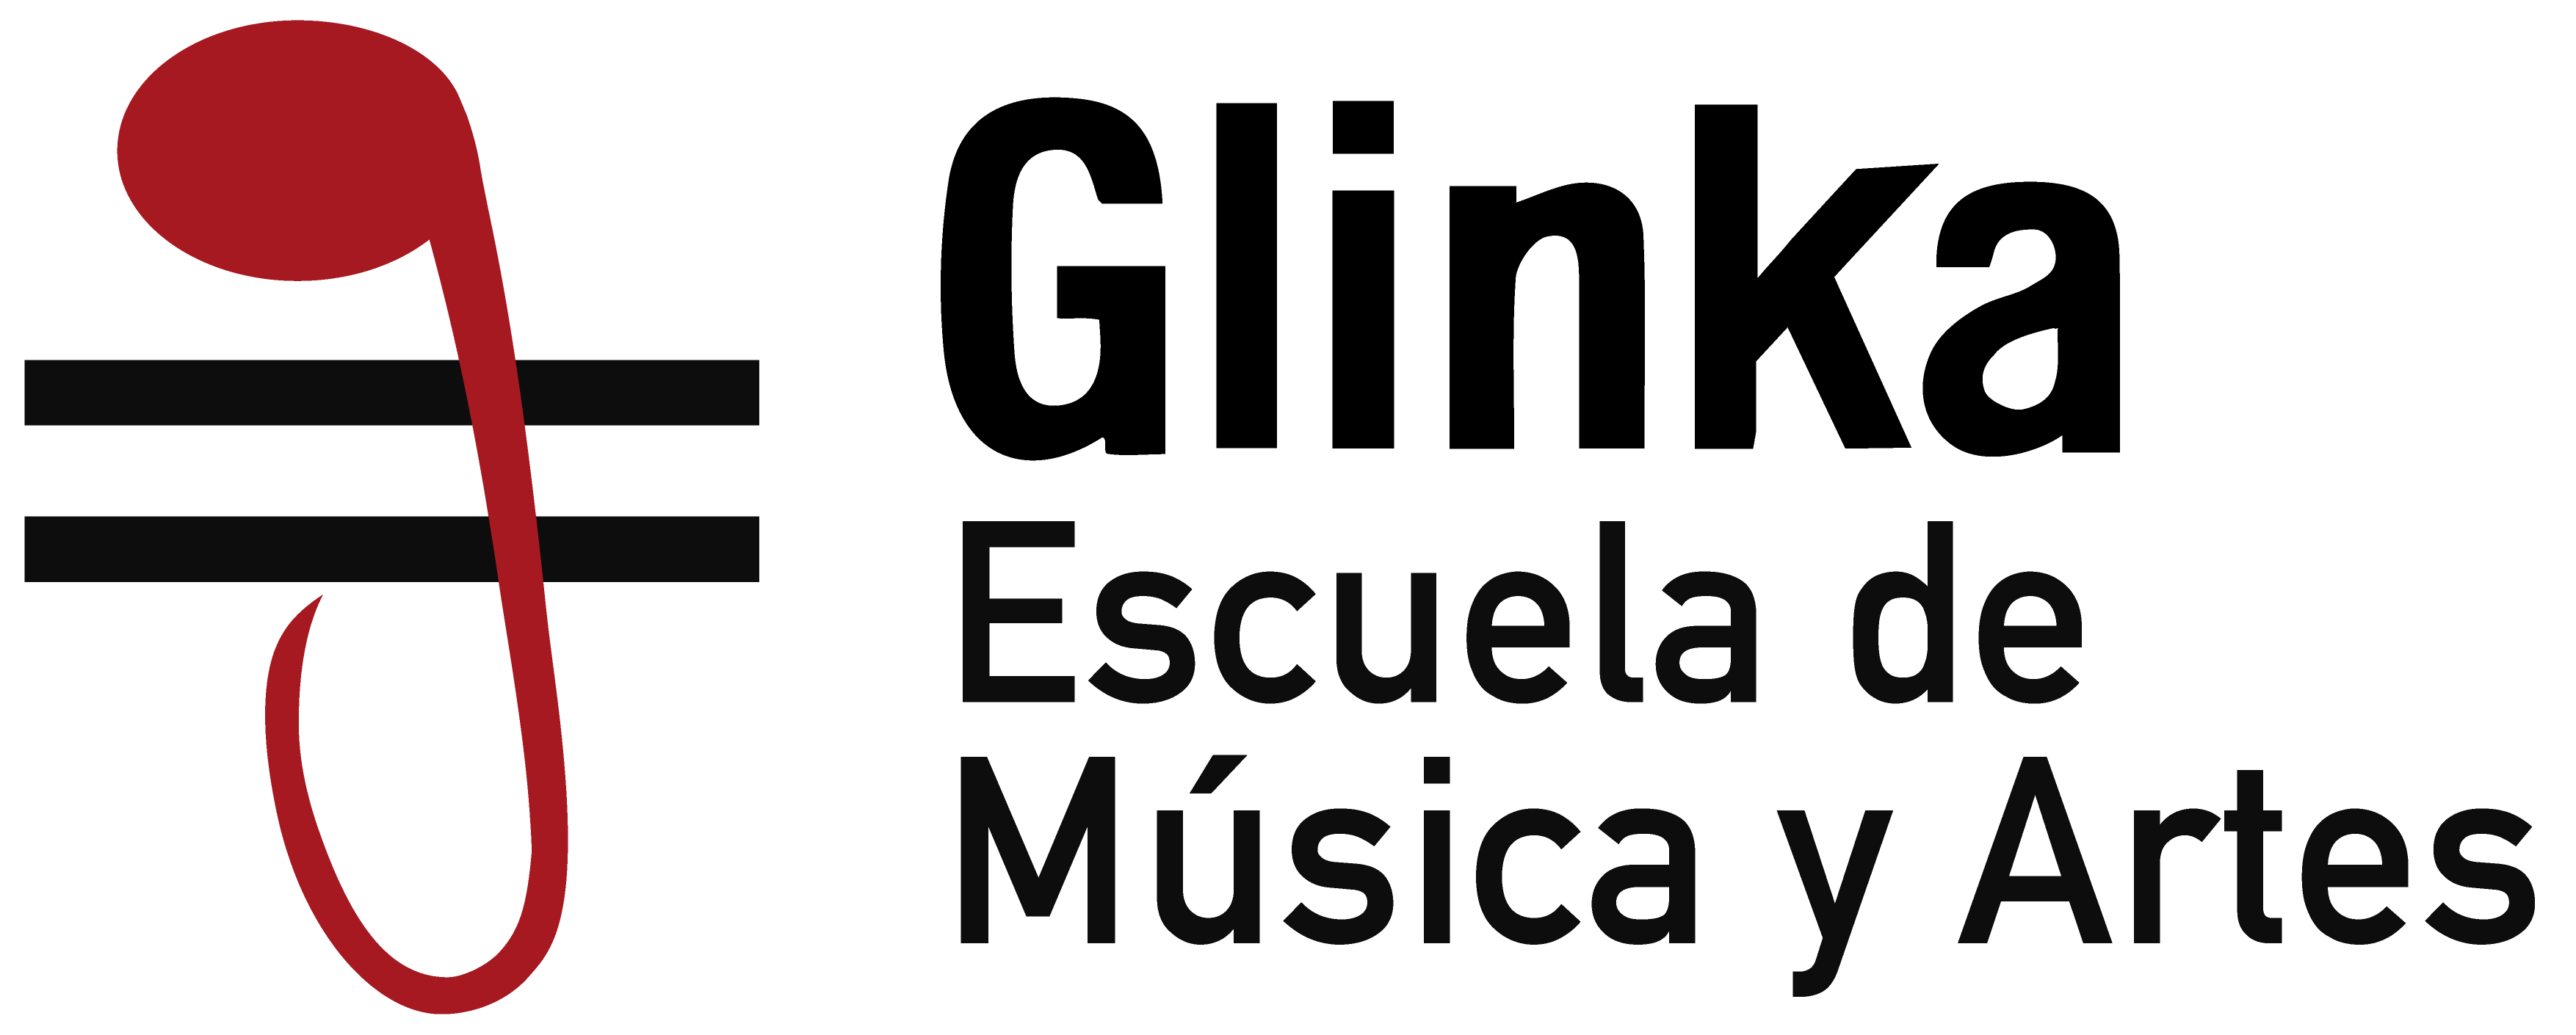 Logotipo Escuela de música y Artes Ginka